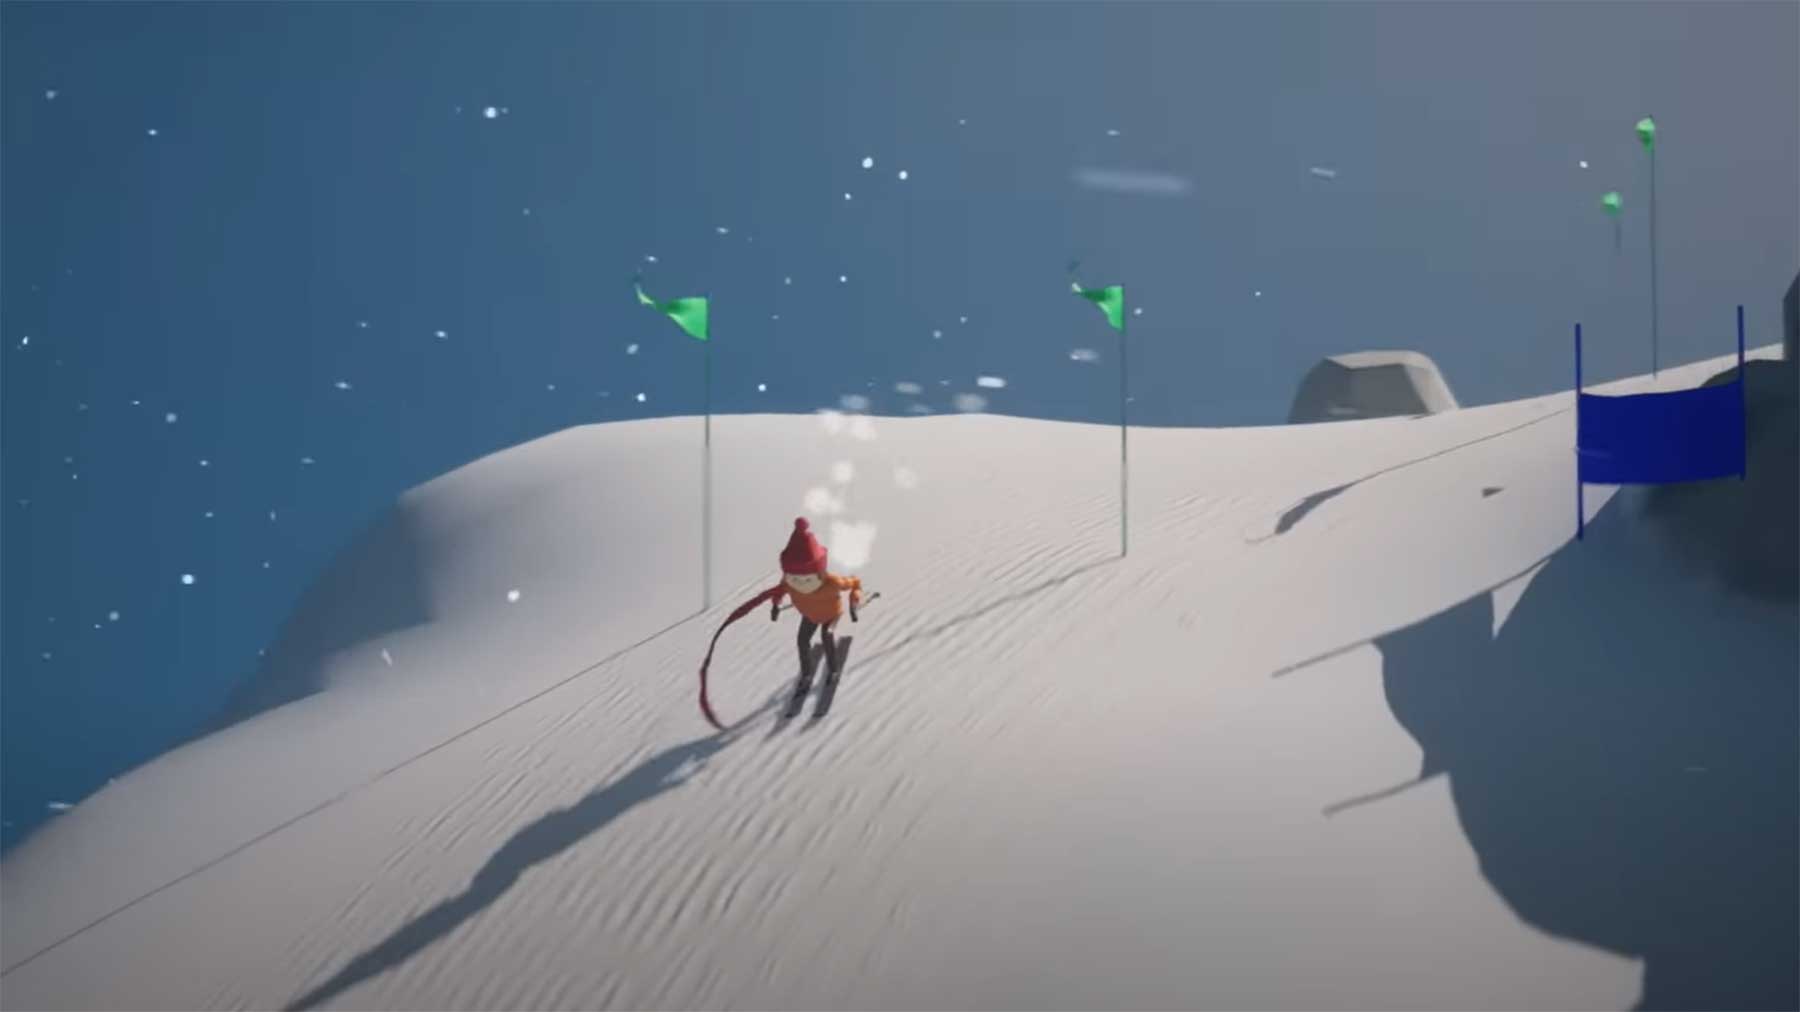 Programmierung eines Multiplayer-Ski-Abfahrt-Spieles